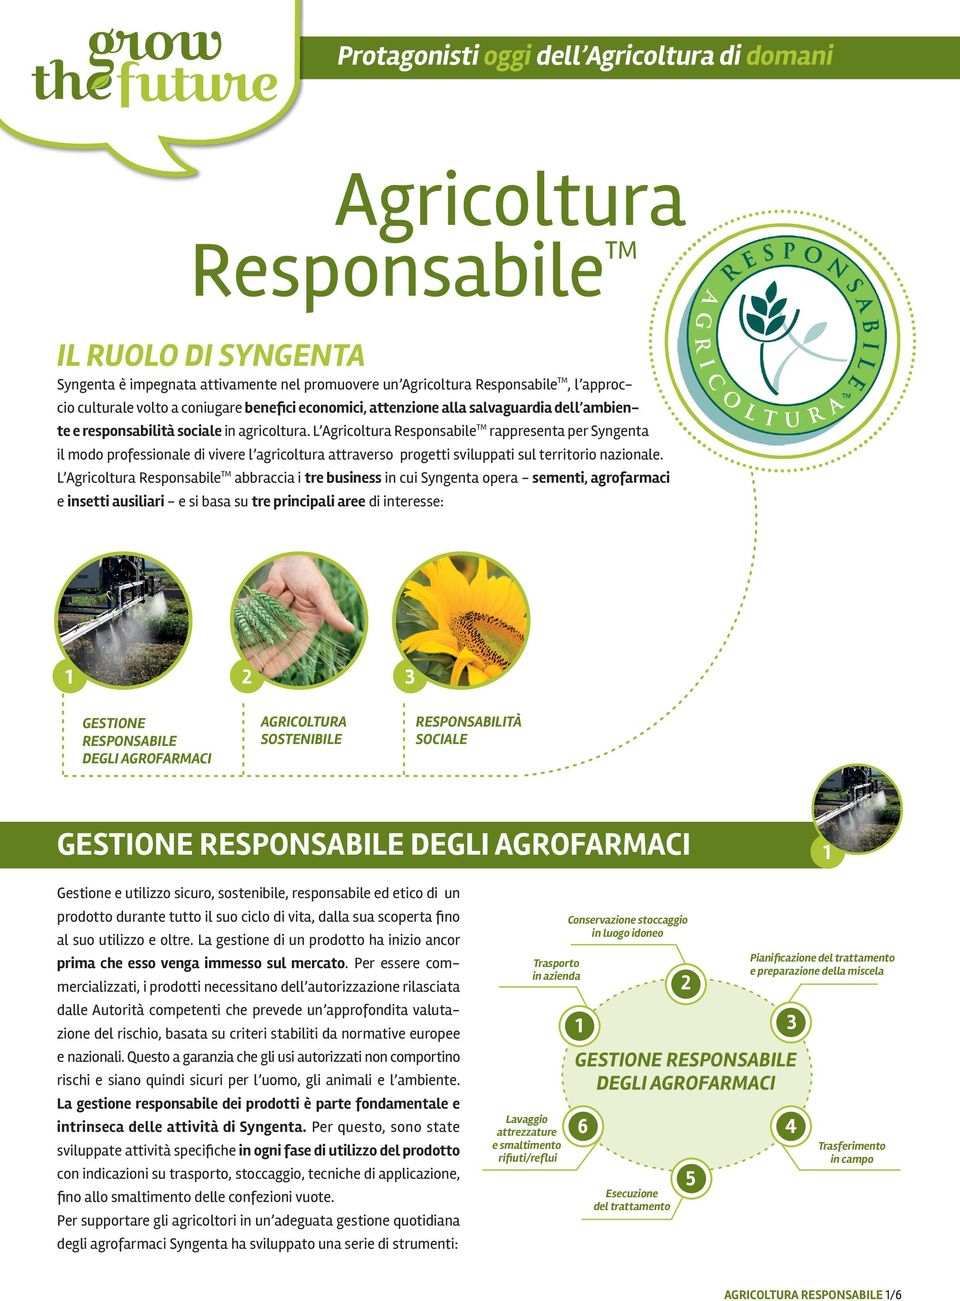 L Agricoltura Responsabile TM rappresenta per Syngenta il modo professionale di vivere l agricoltura attraverso progetti sviluppati sul territorio nazionale.